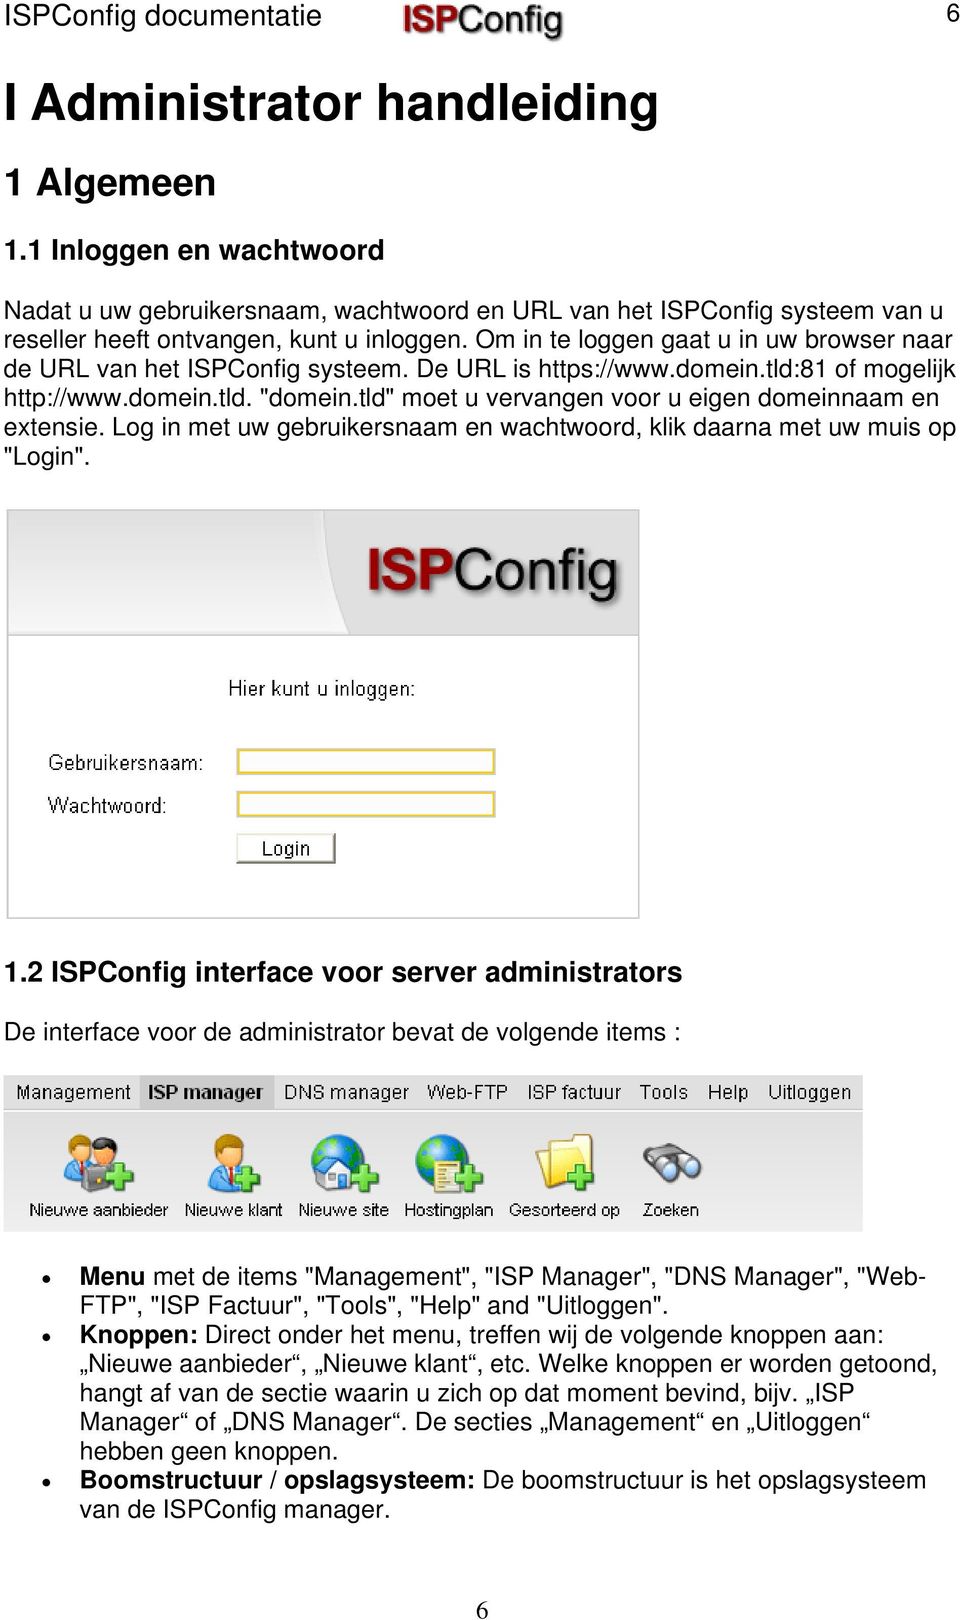 Om in te loggen gaat u in uw browser naar de URL van het ISPConfig systeem. De URL is https://www.domein.tld:81 of mogelijk http://www.domein.tld. "domein.